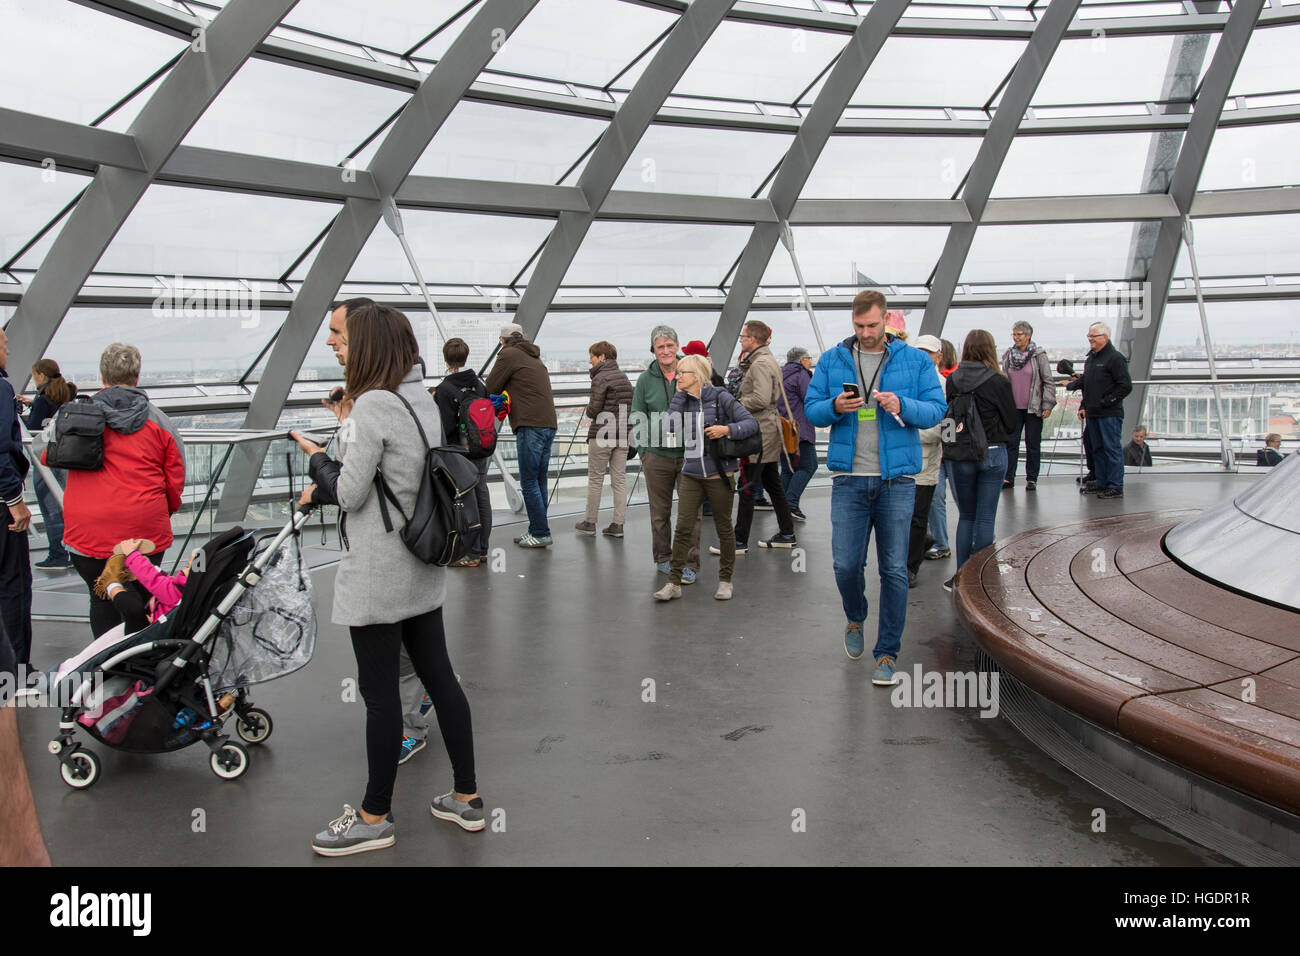 La cupola del Reichstag a Berlino Foto Stock